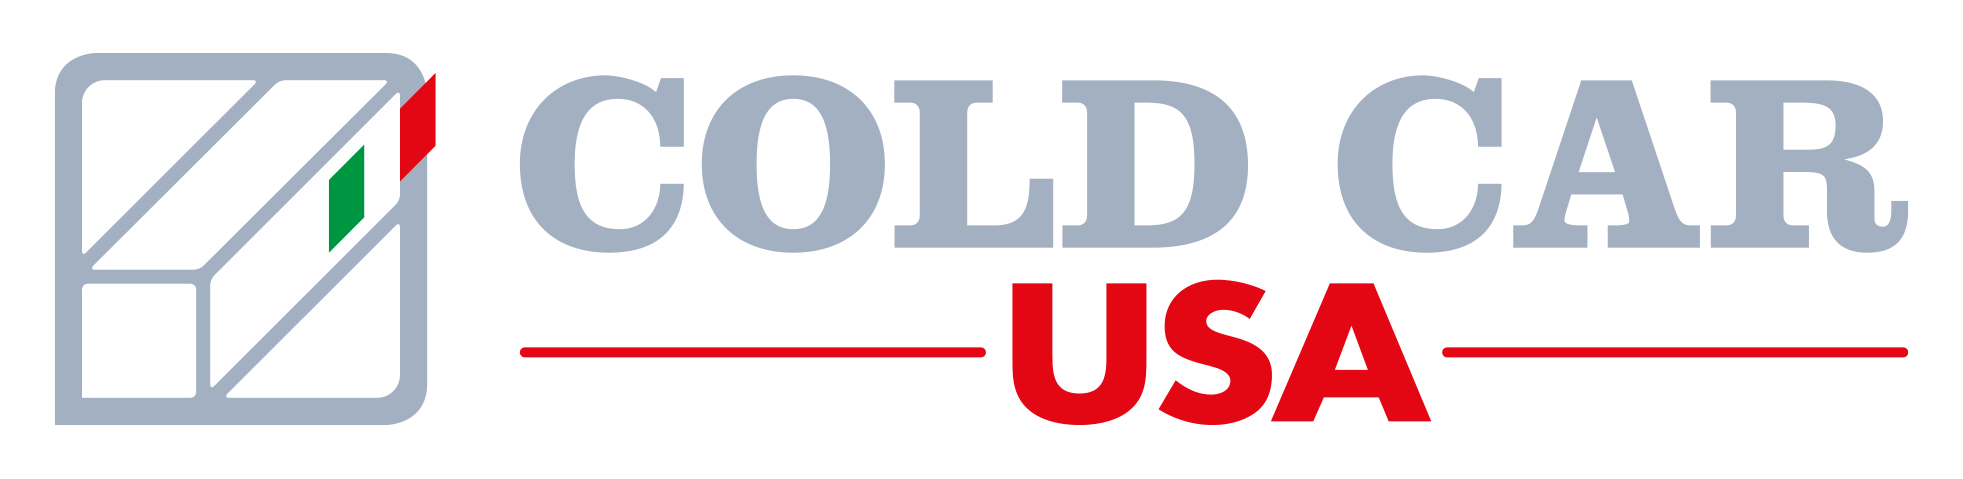 Cold Car USA logo